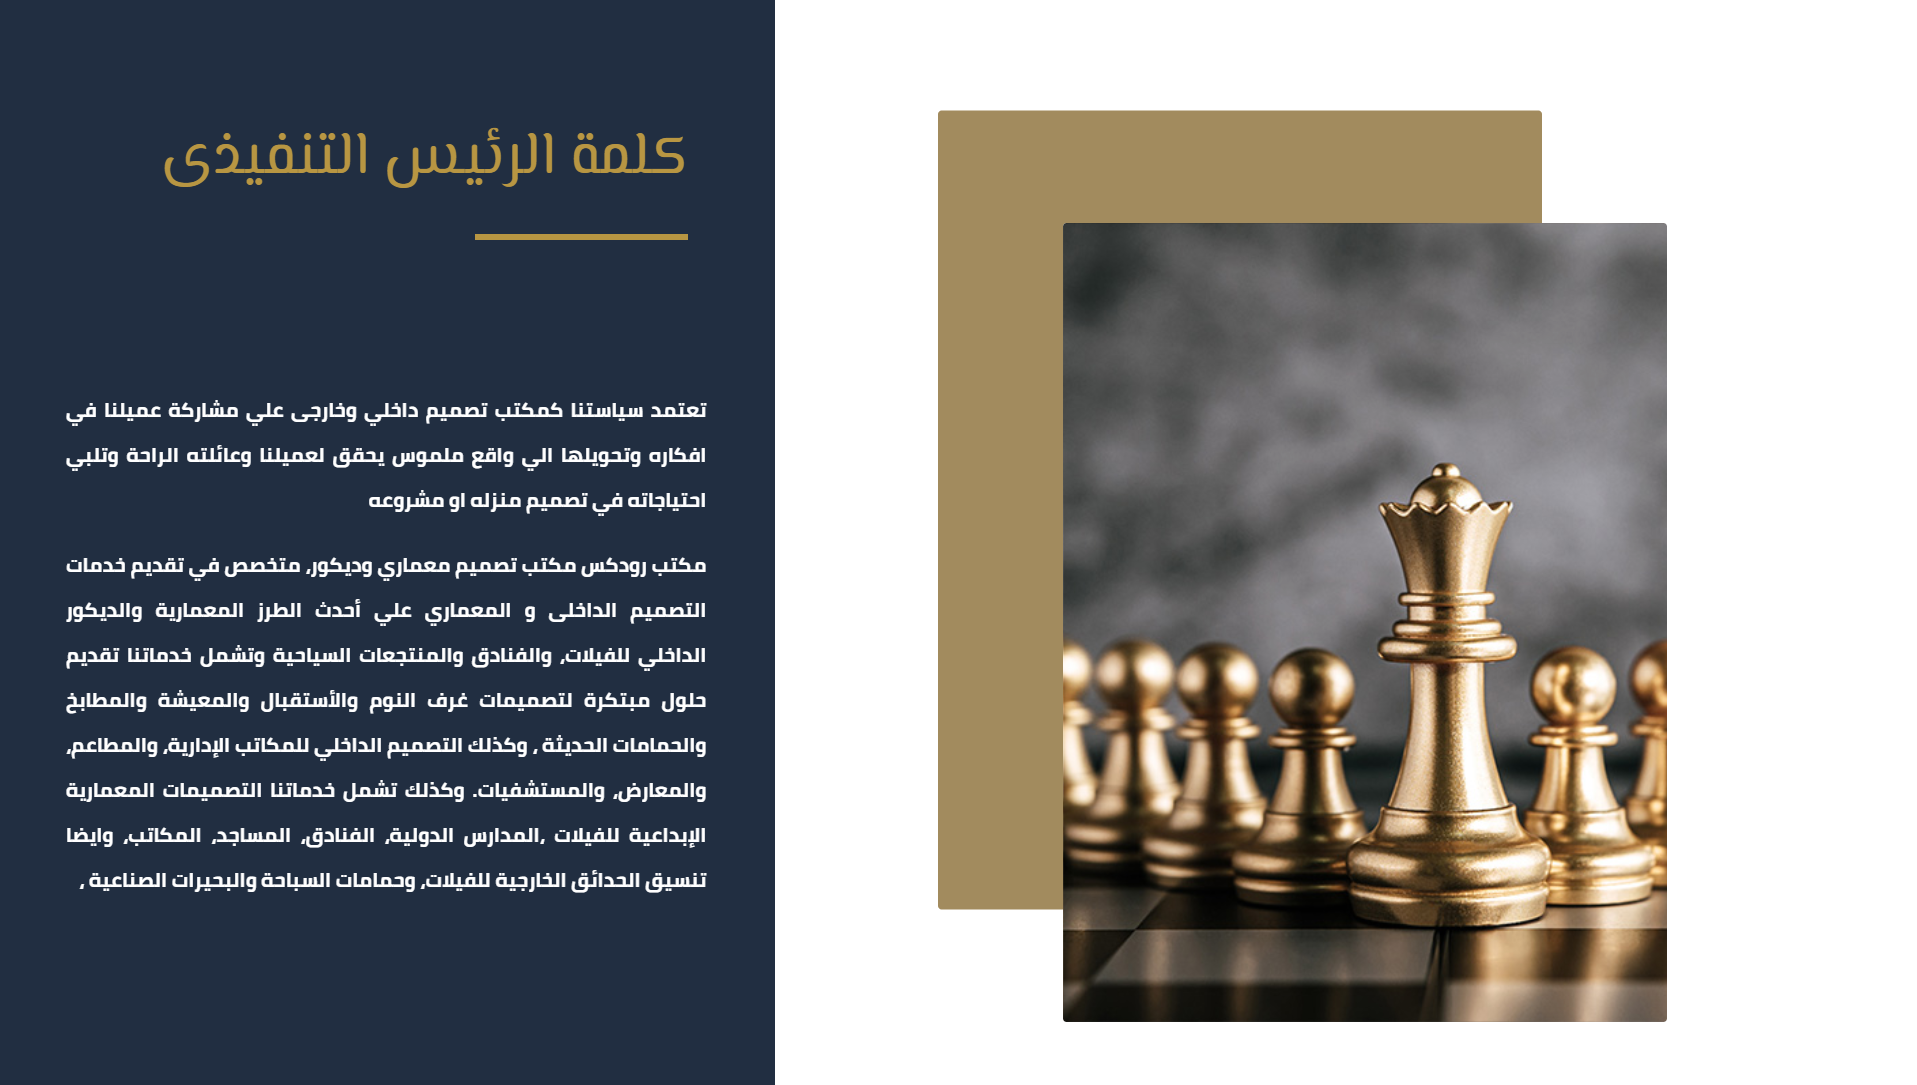 تصميم موقع الكتروني لشركة مقاولات فى جدة - السعودية